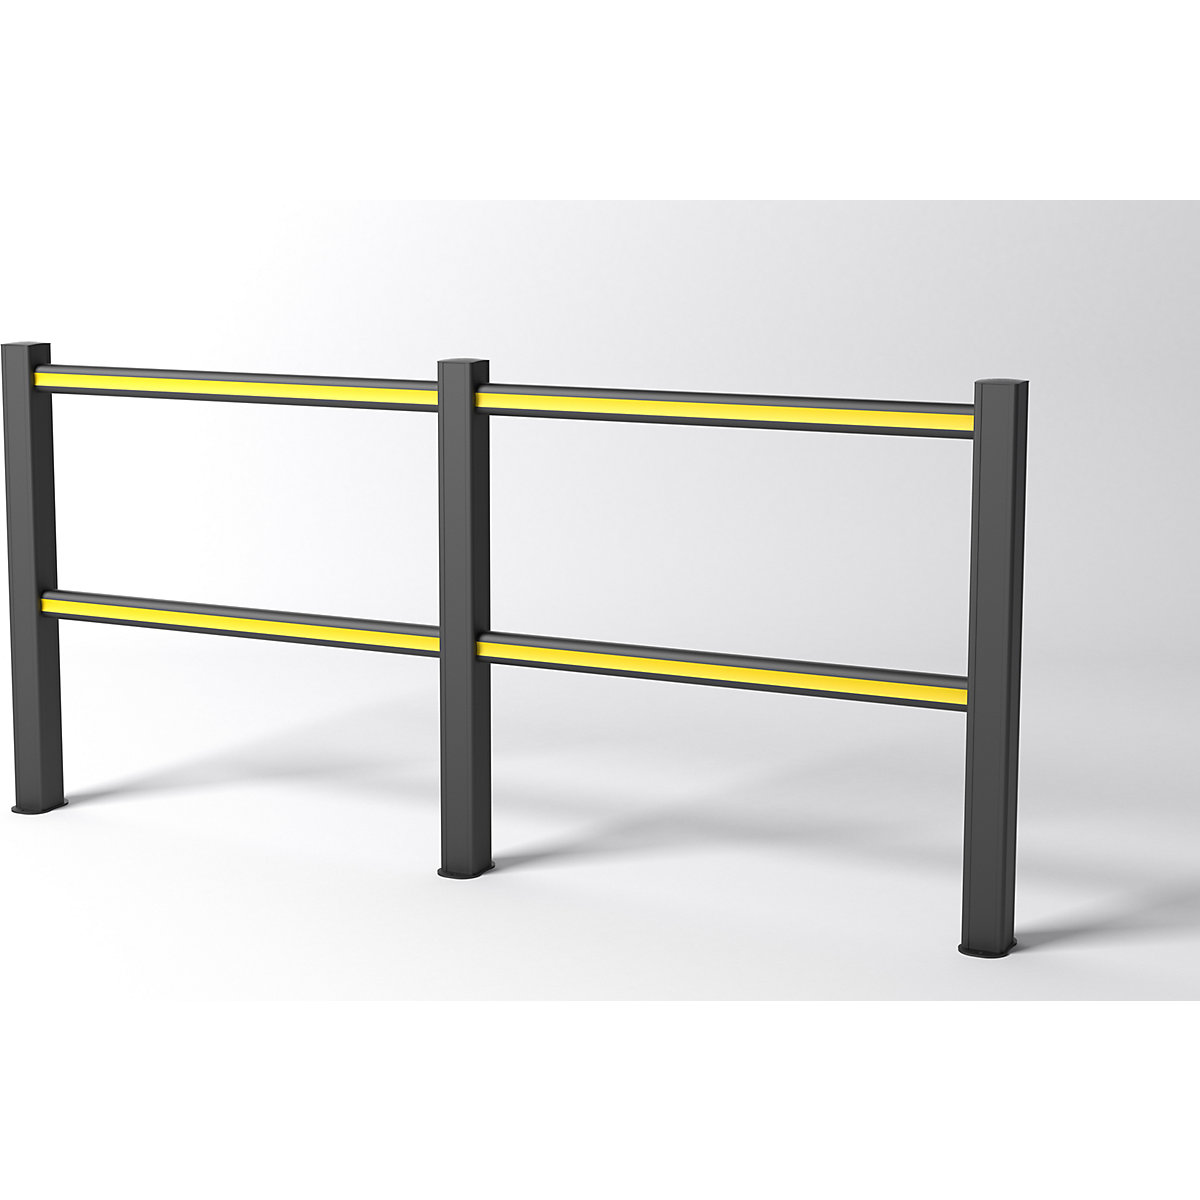 FLEX IMPACT handrail system, black posts – black/yellow struts, width 2500 mm-3